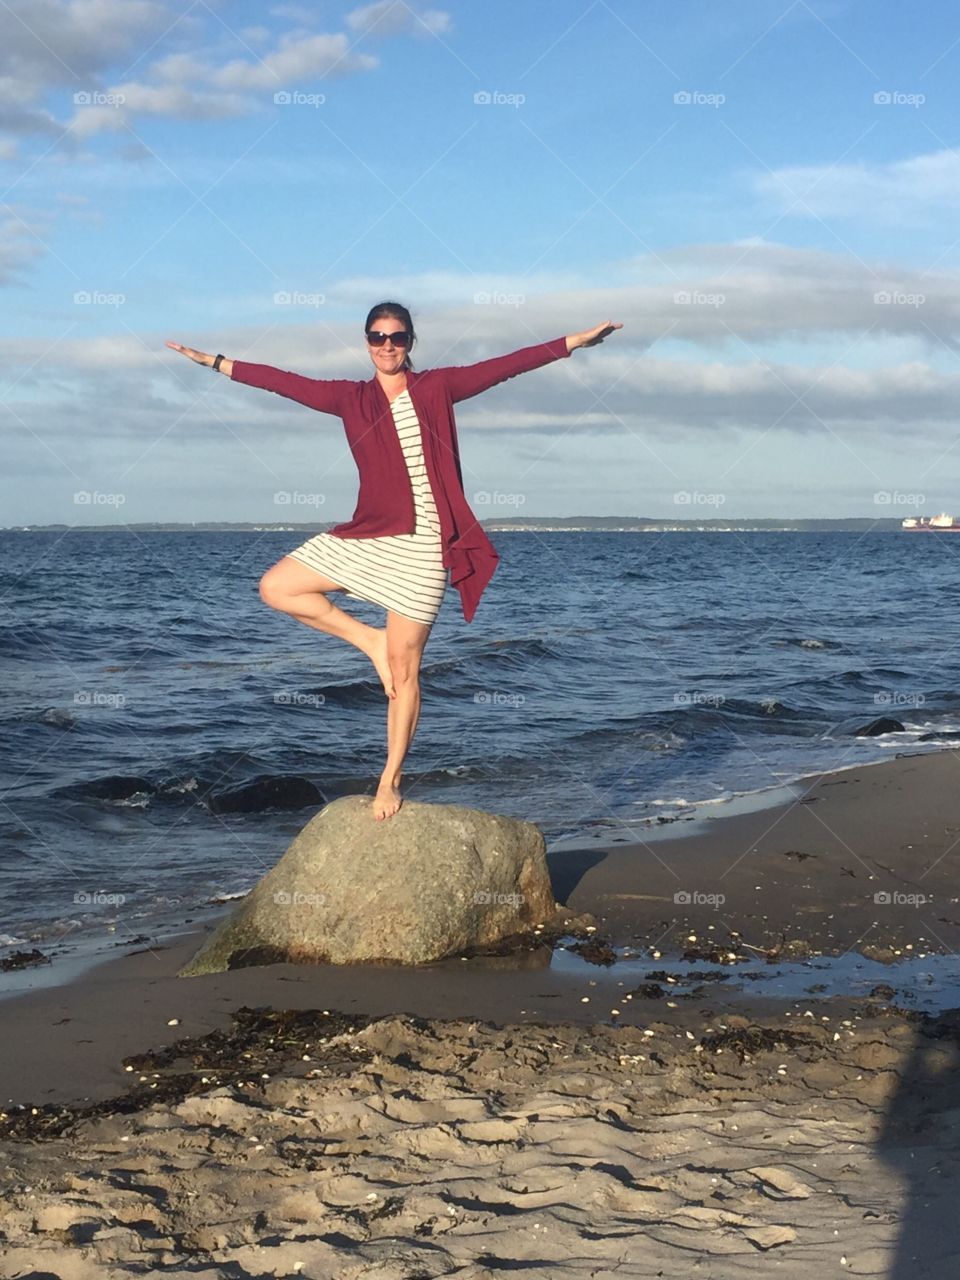 Yoga on the beach
